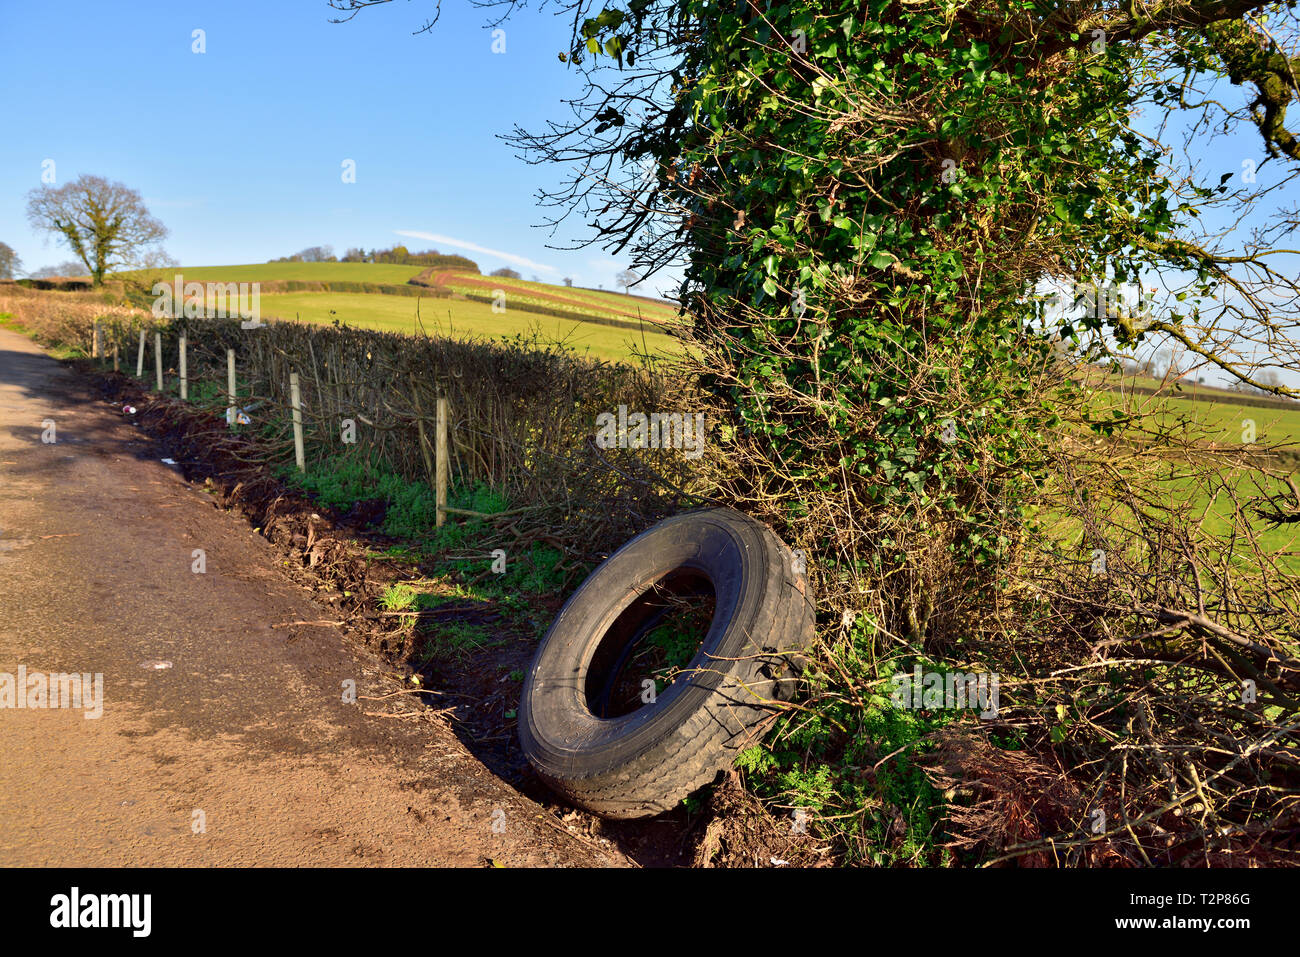 Carretera Rural sentar por neumáticos usados abandonados. Foto de stock